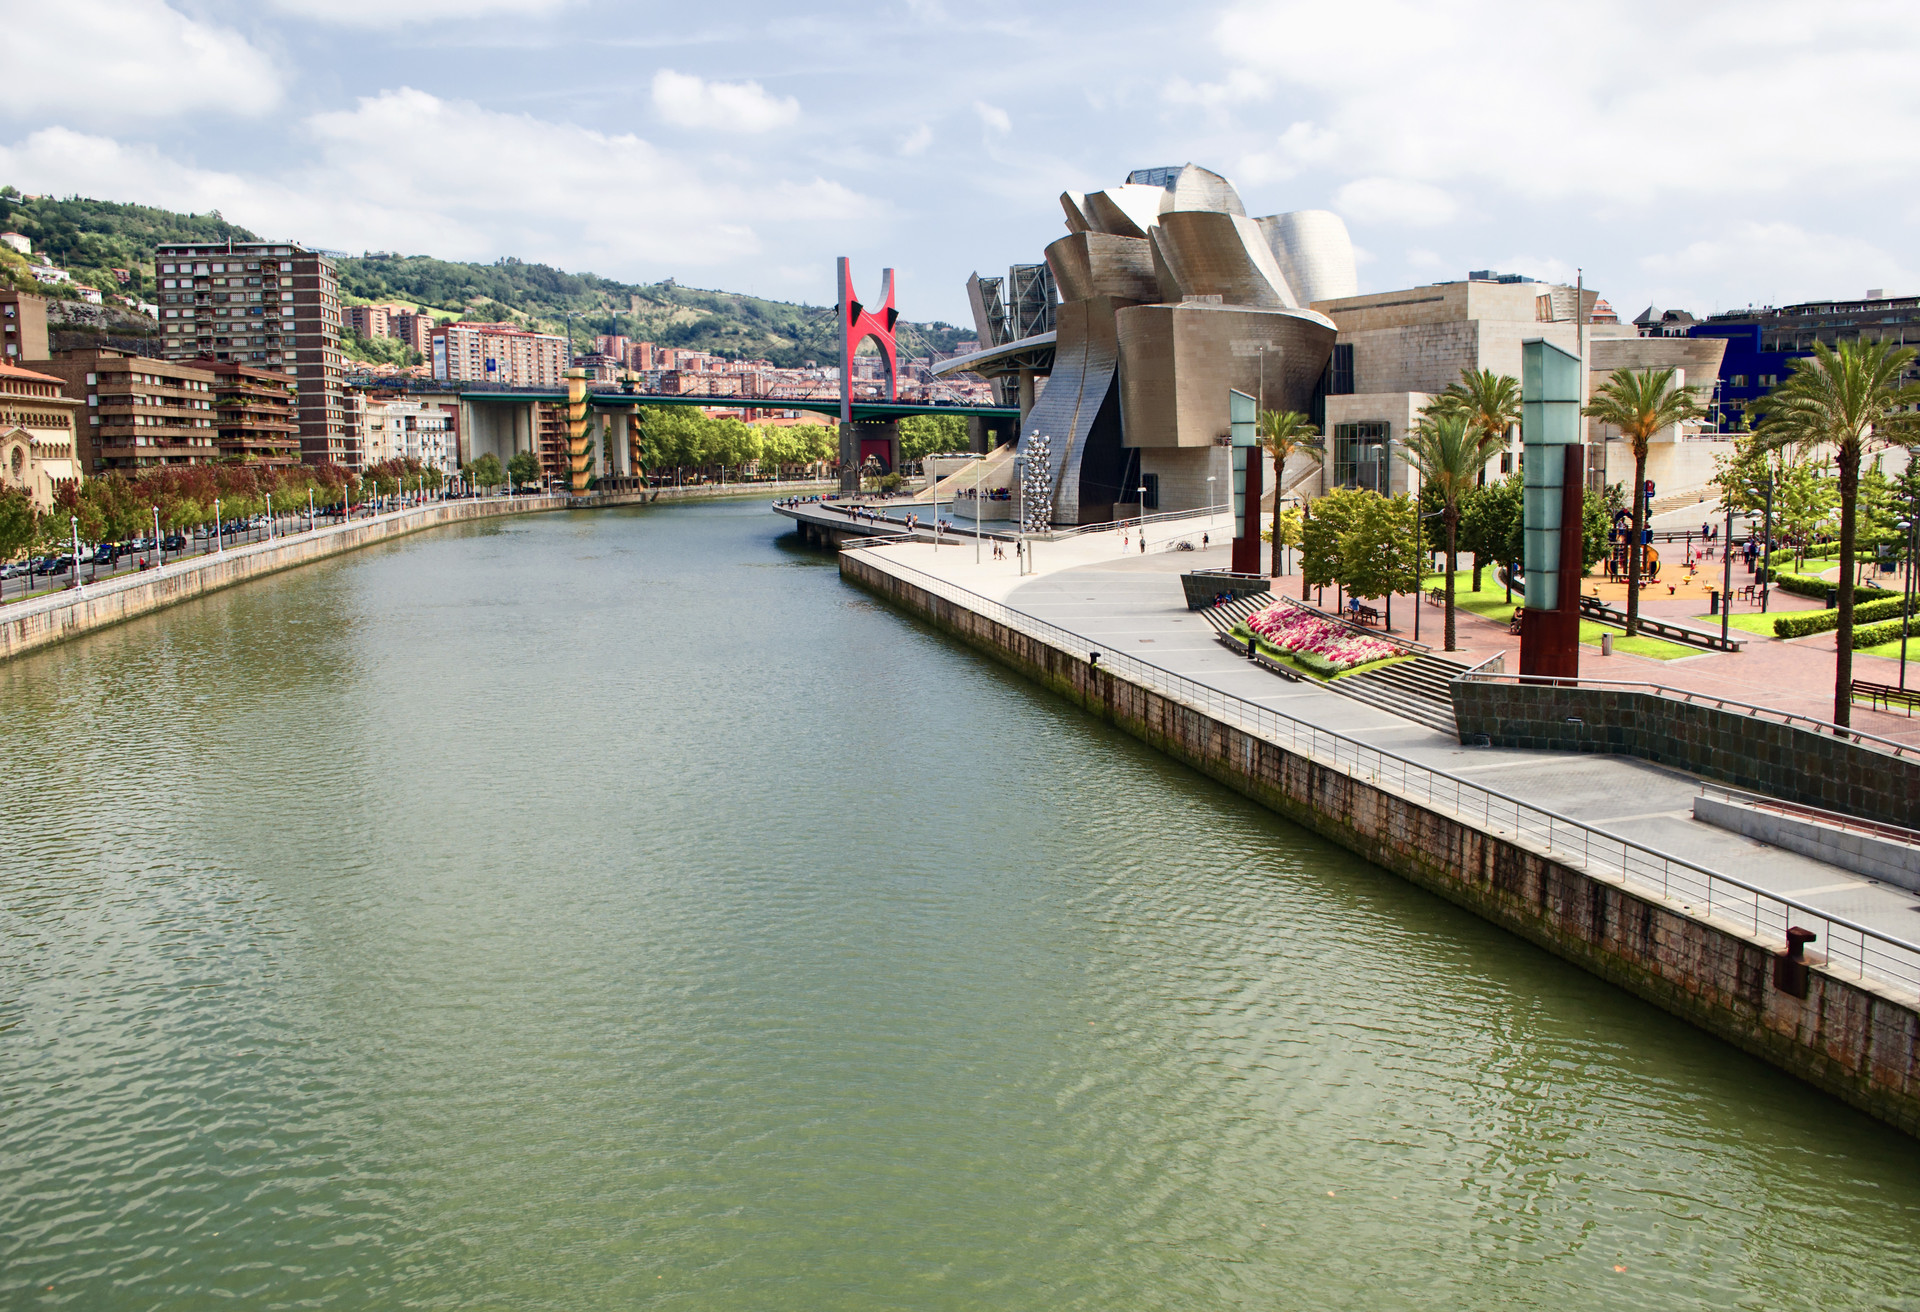 Unternimm einen Abstecher nach Bilbao, um das von Frank Gehry entworfene Guggenheim-Museum zu besuchen